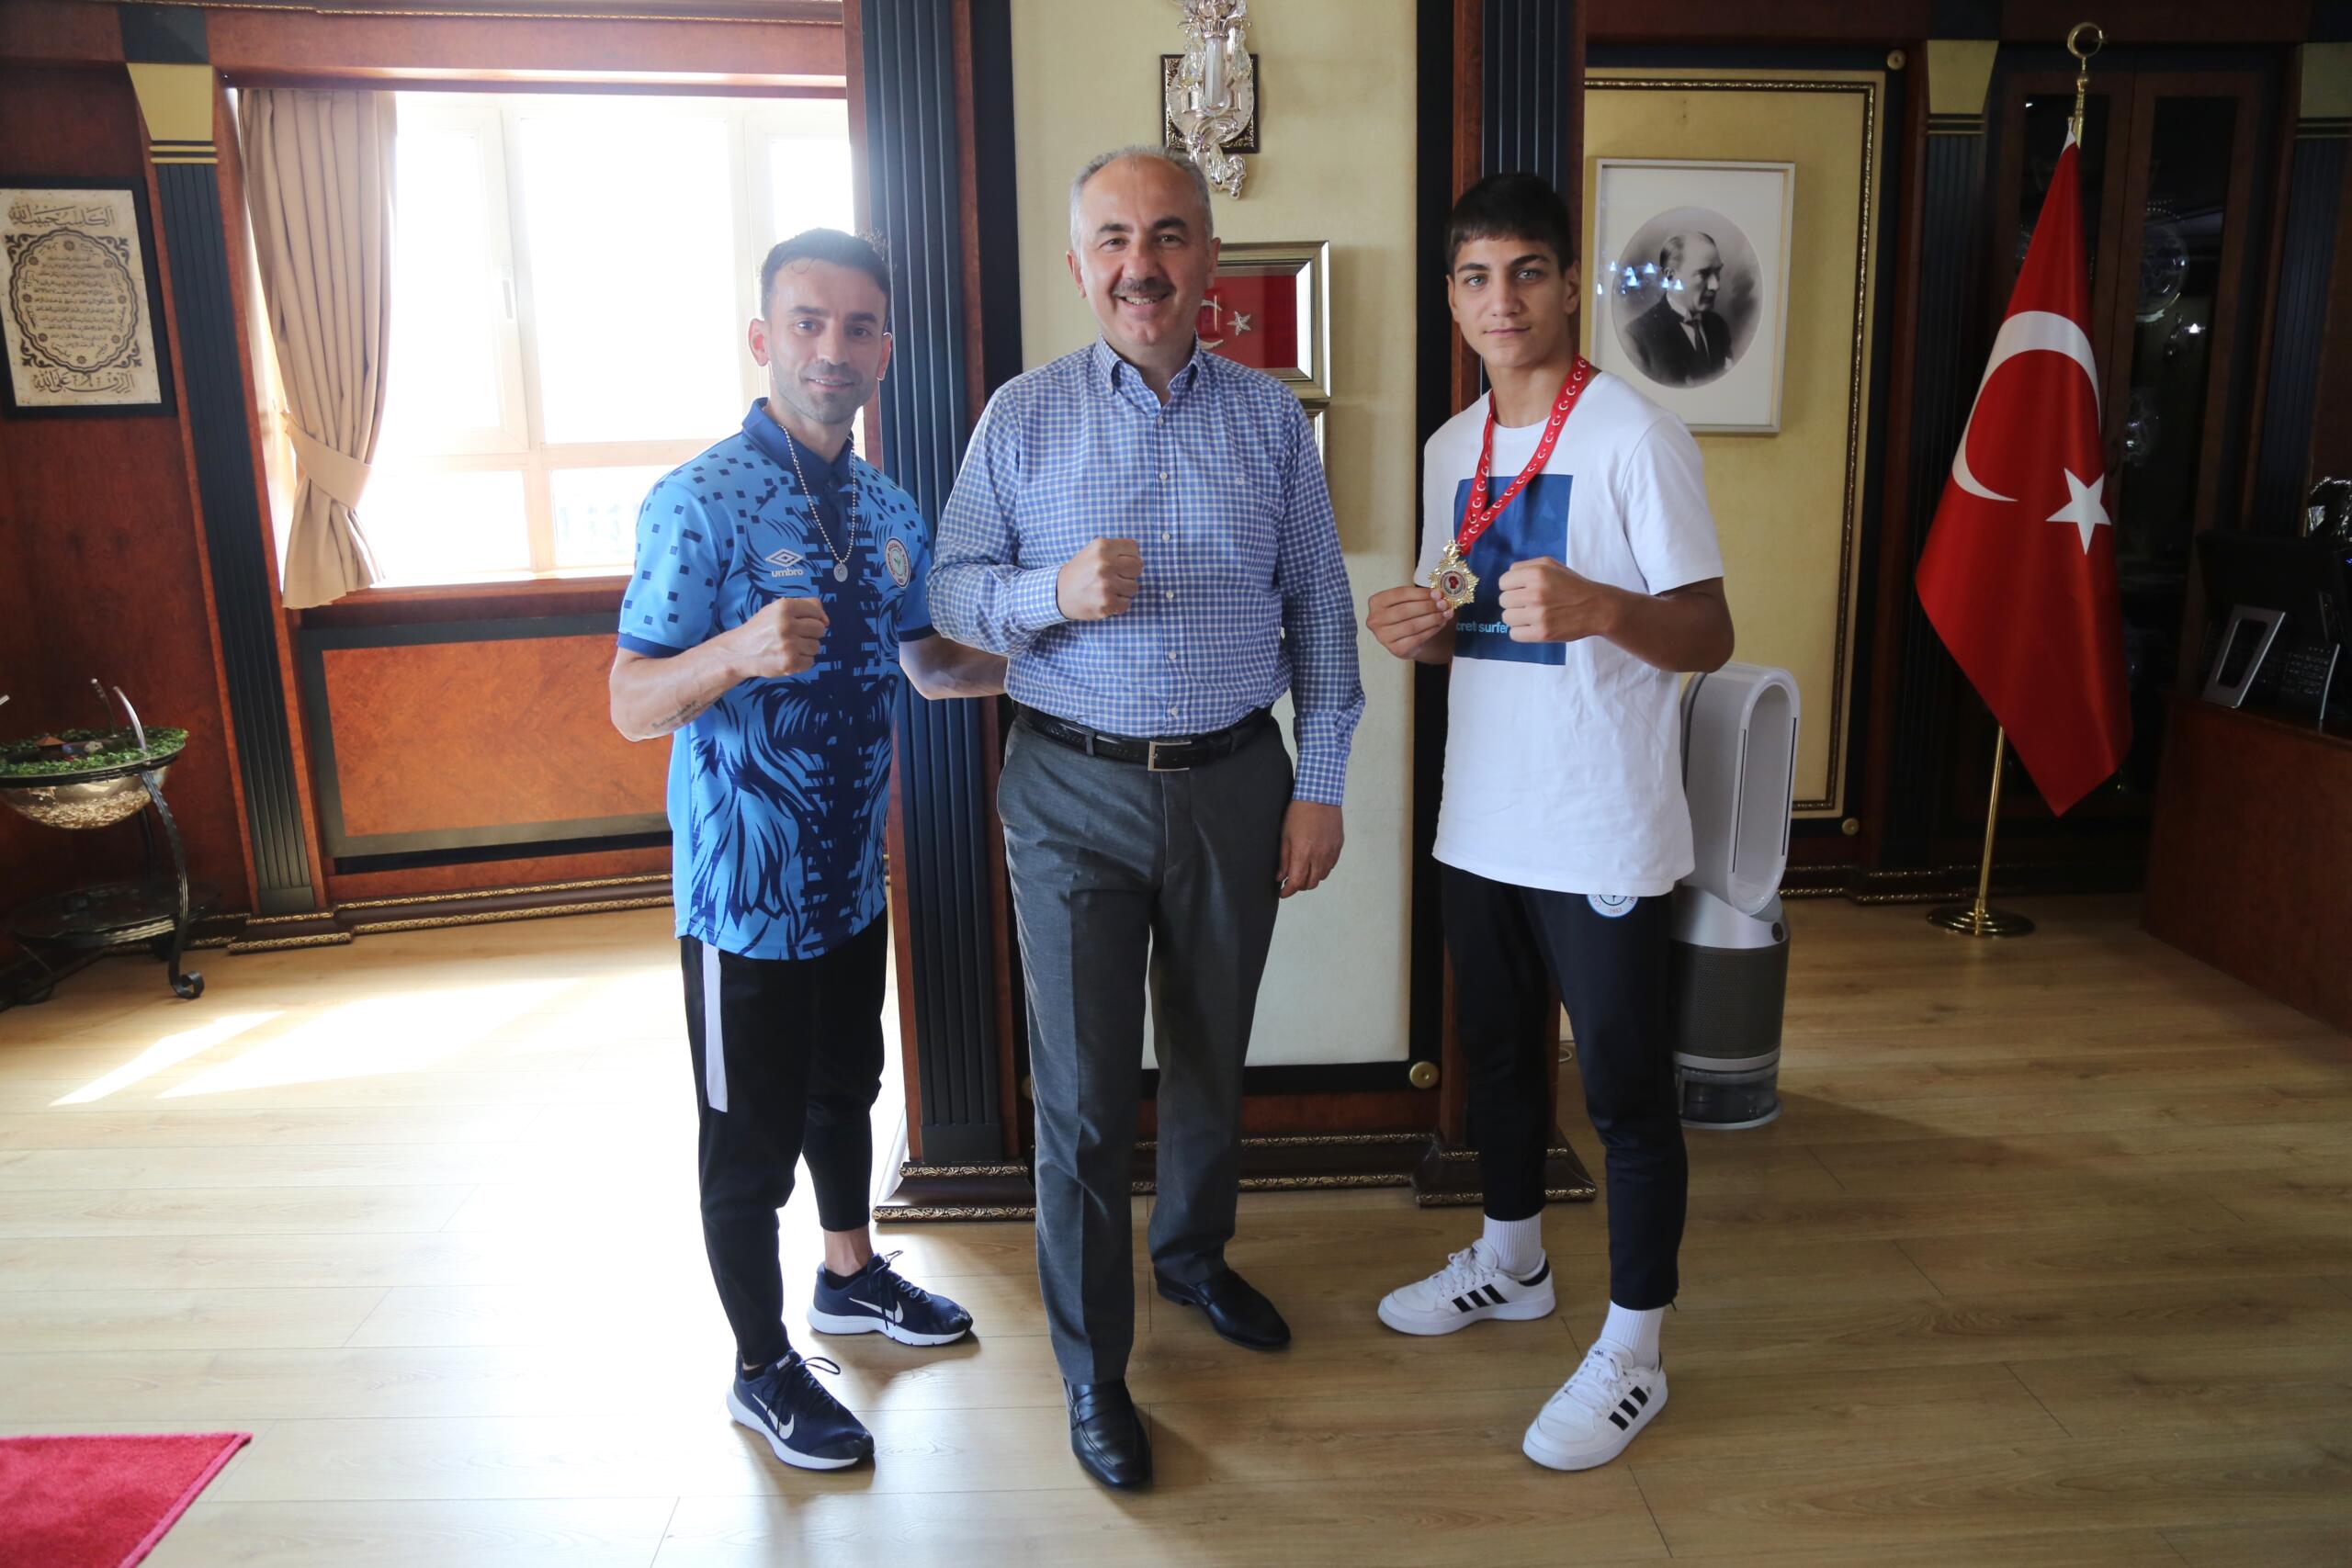 Türkiye Şampiyonu Alperen Yılmaz, Belediye Başkanımız Rahmi Metin’i ziyaret etti.